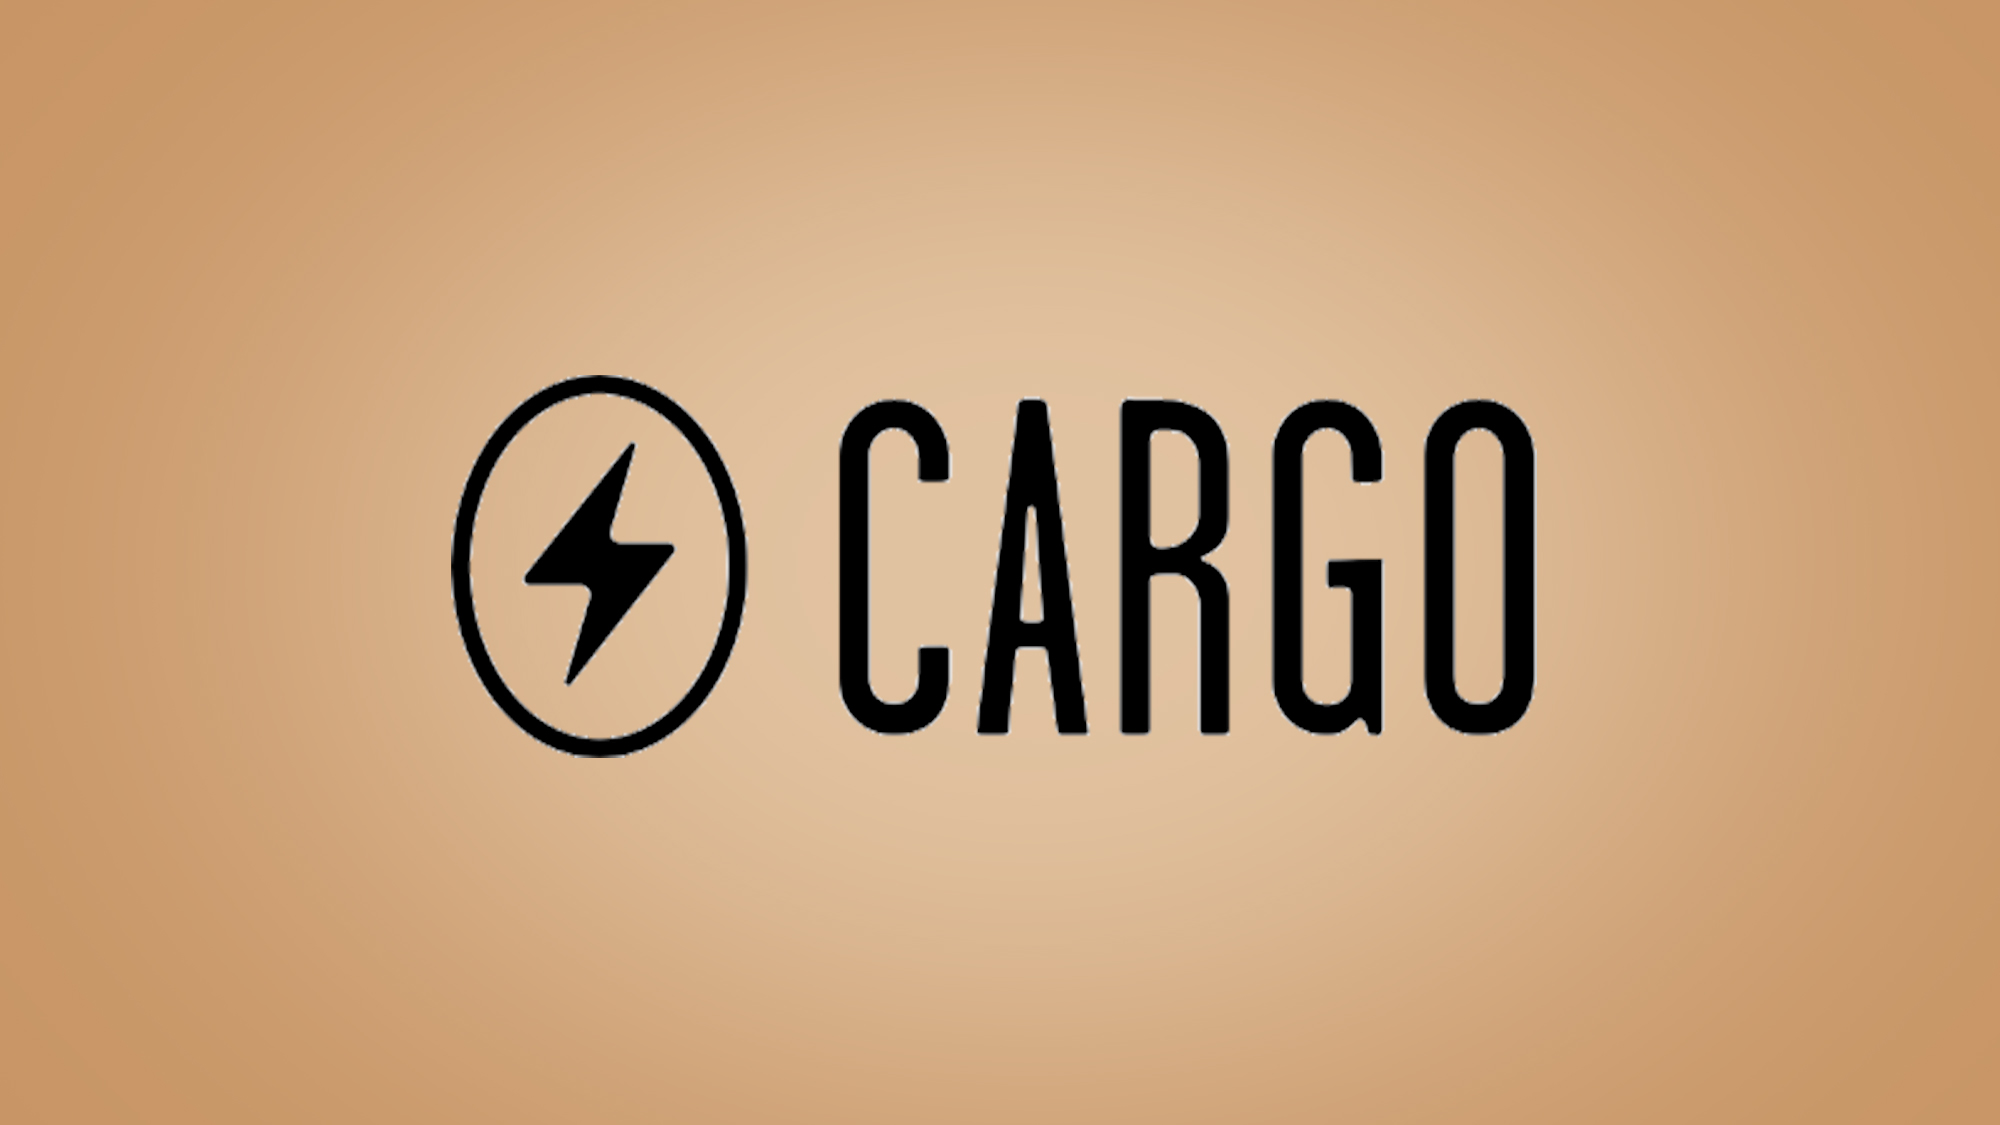 Cargo logo on beige background